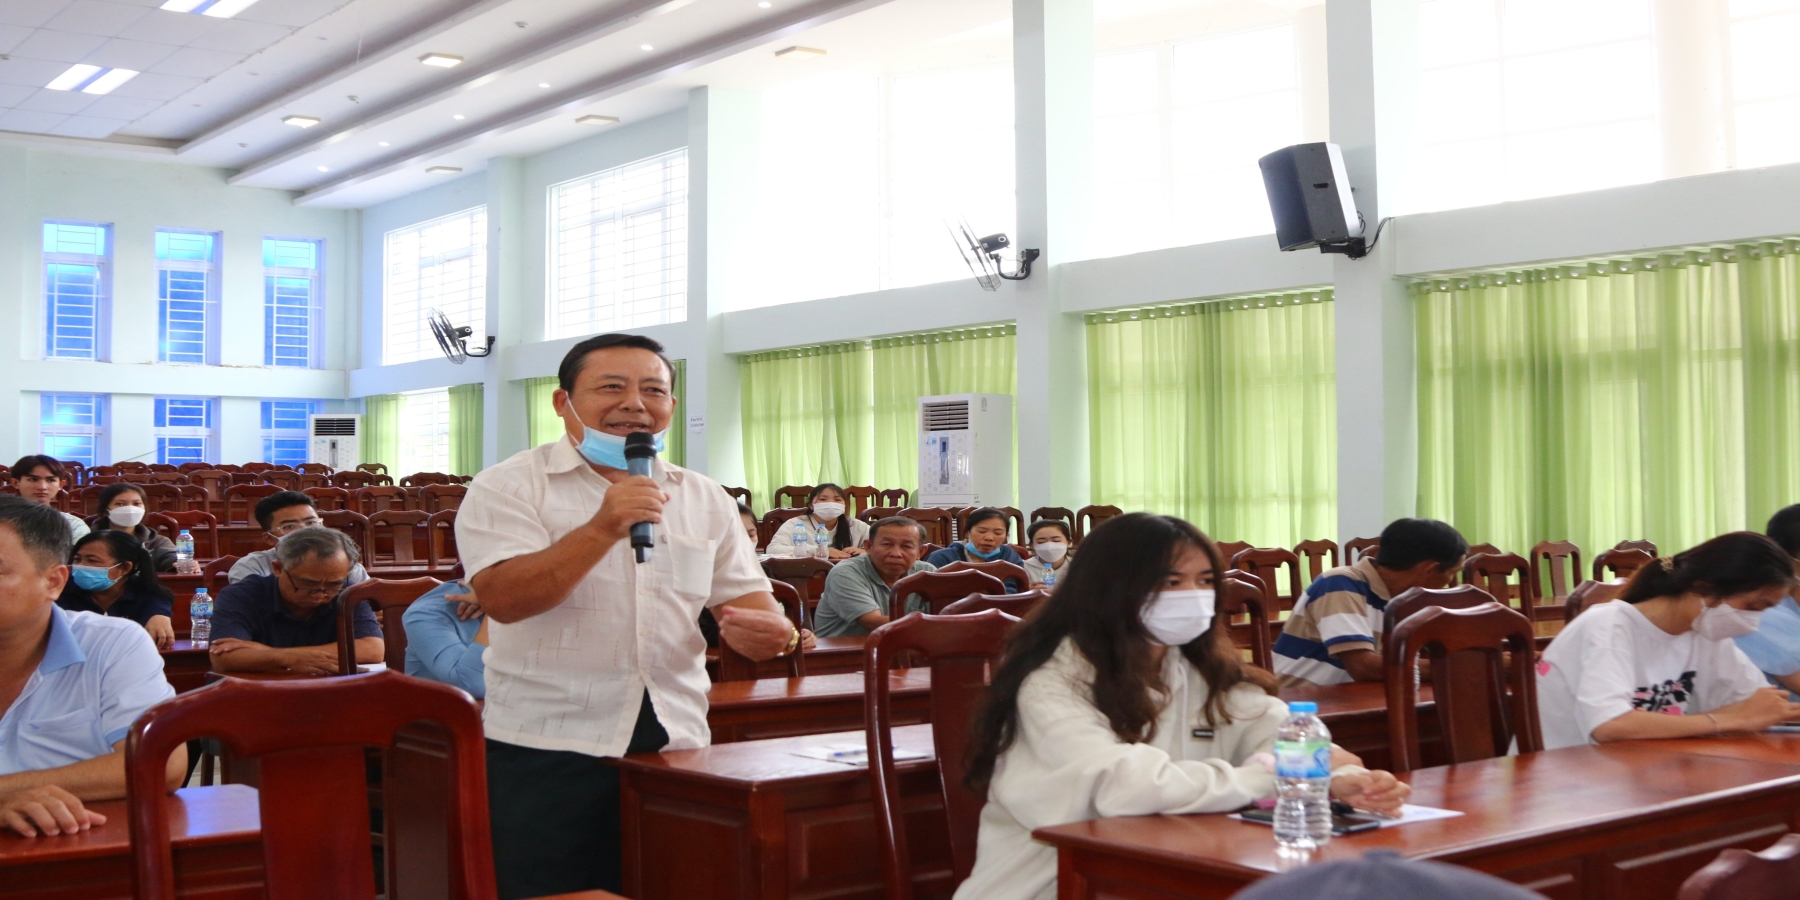 Gần 300 phụ huynh, thí sinh tham dự Hội nghị Tư vấn tuyển sinh, đăng ký nhập học tại Trường Đại học Kiên Giang